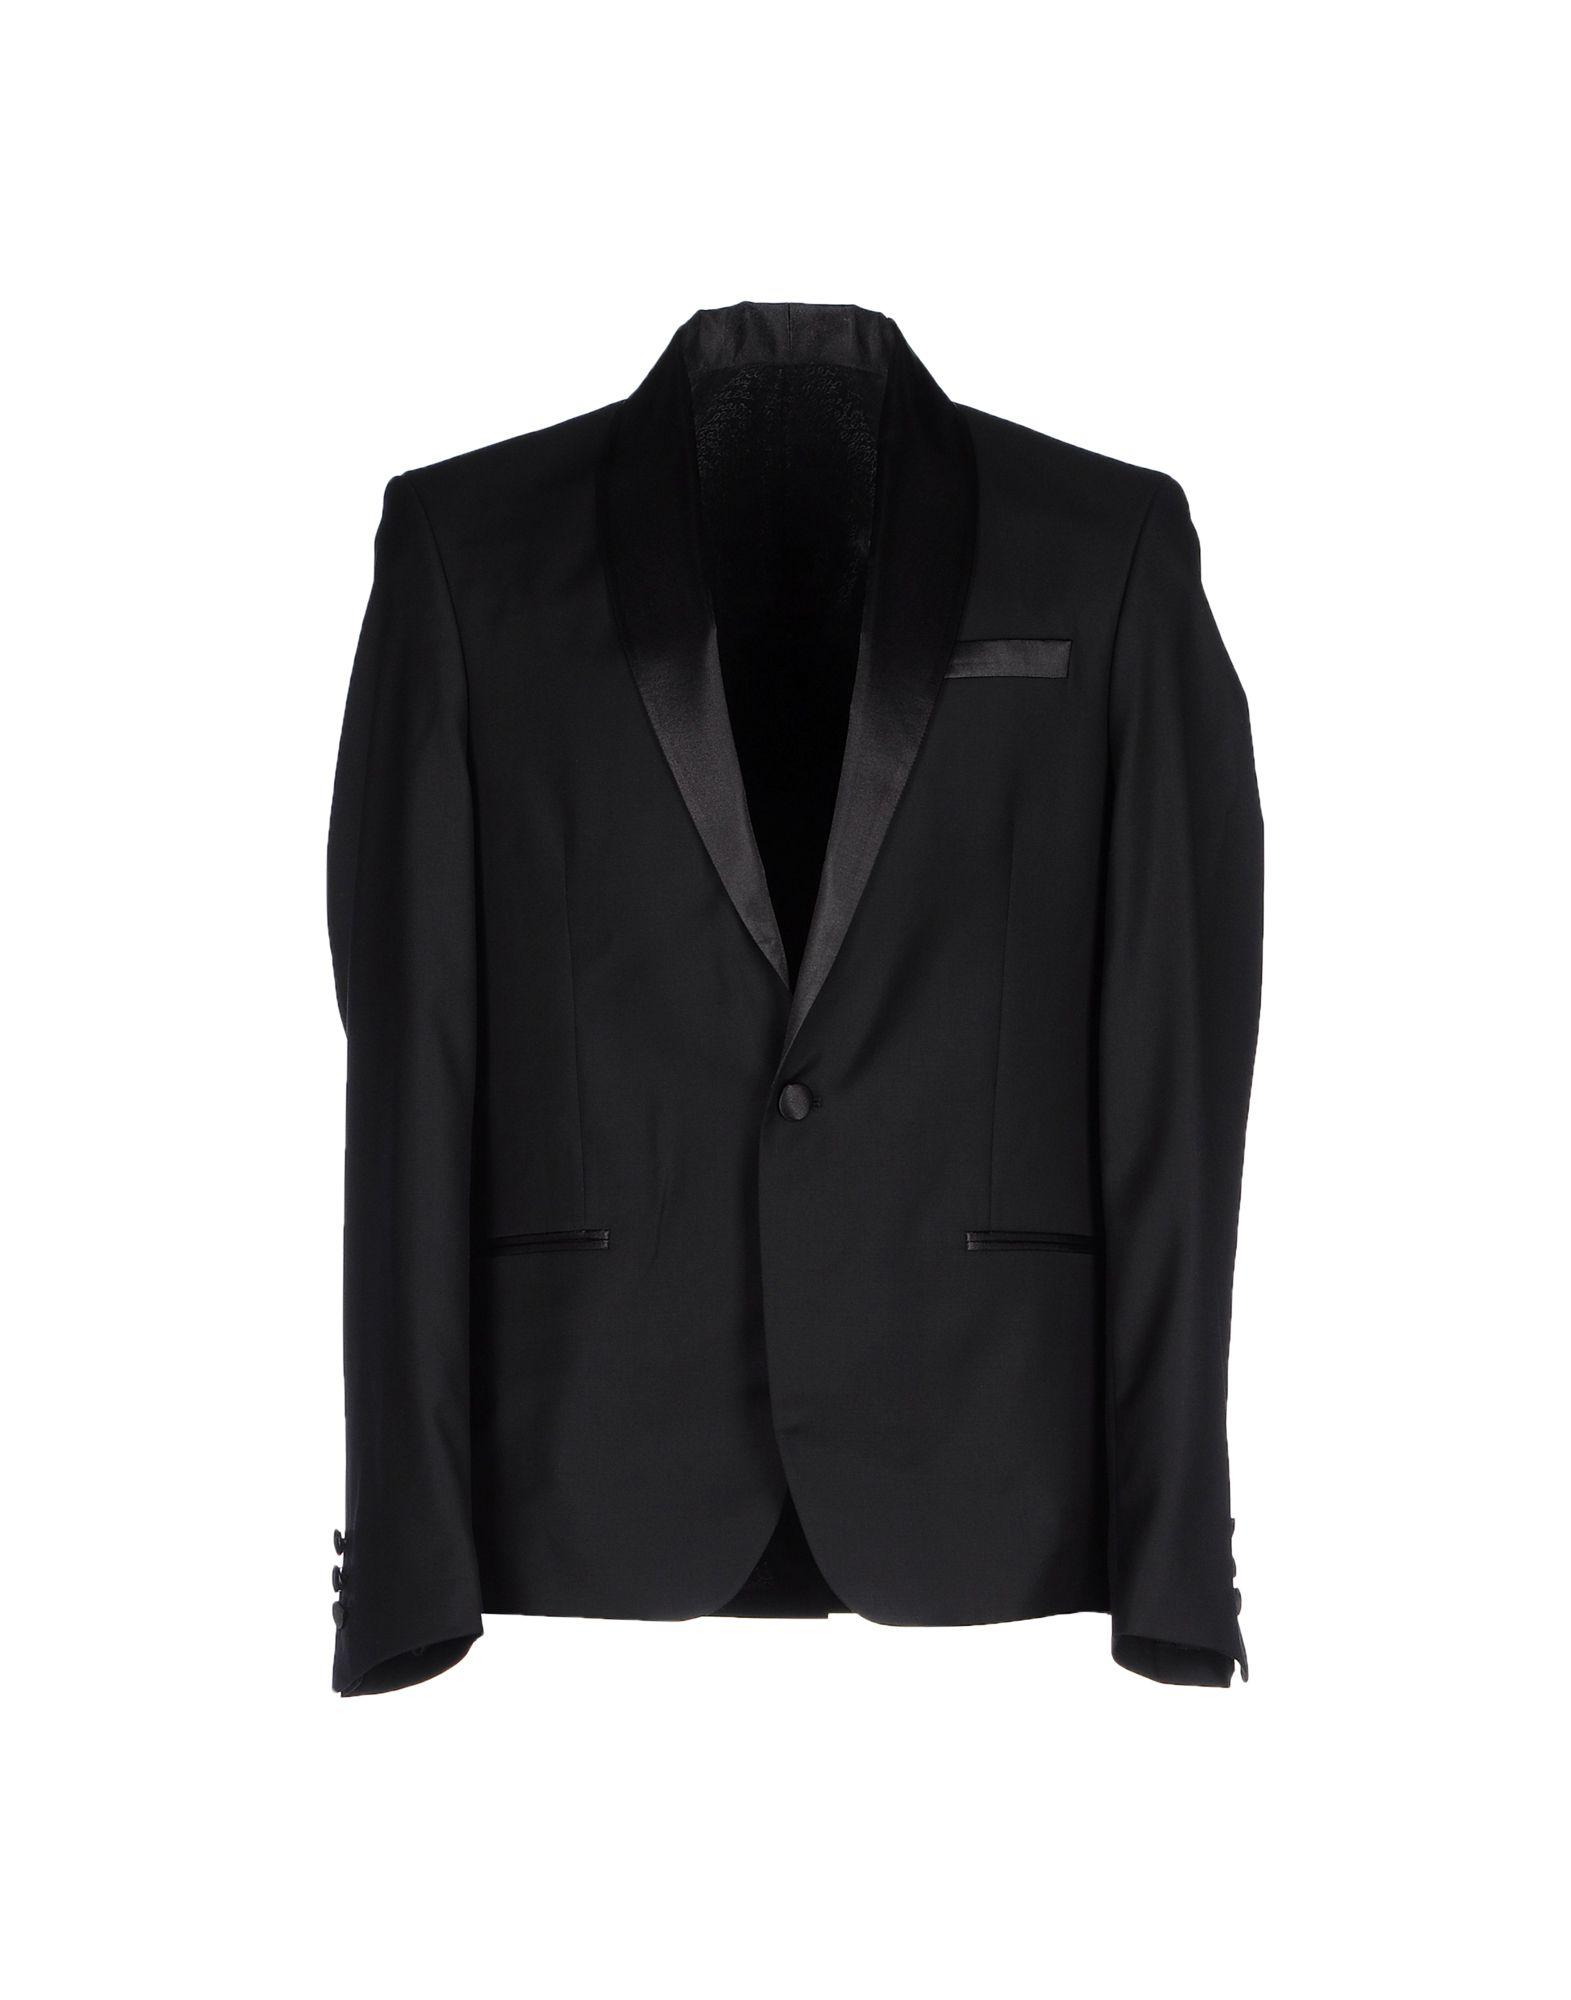 Balmain Wool Blazer in Black for Men - Lyst